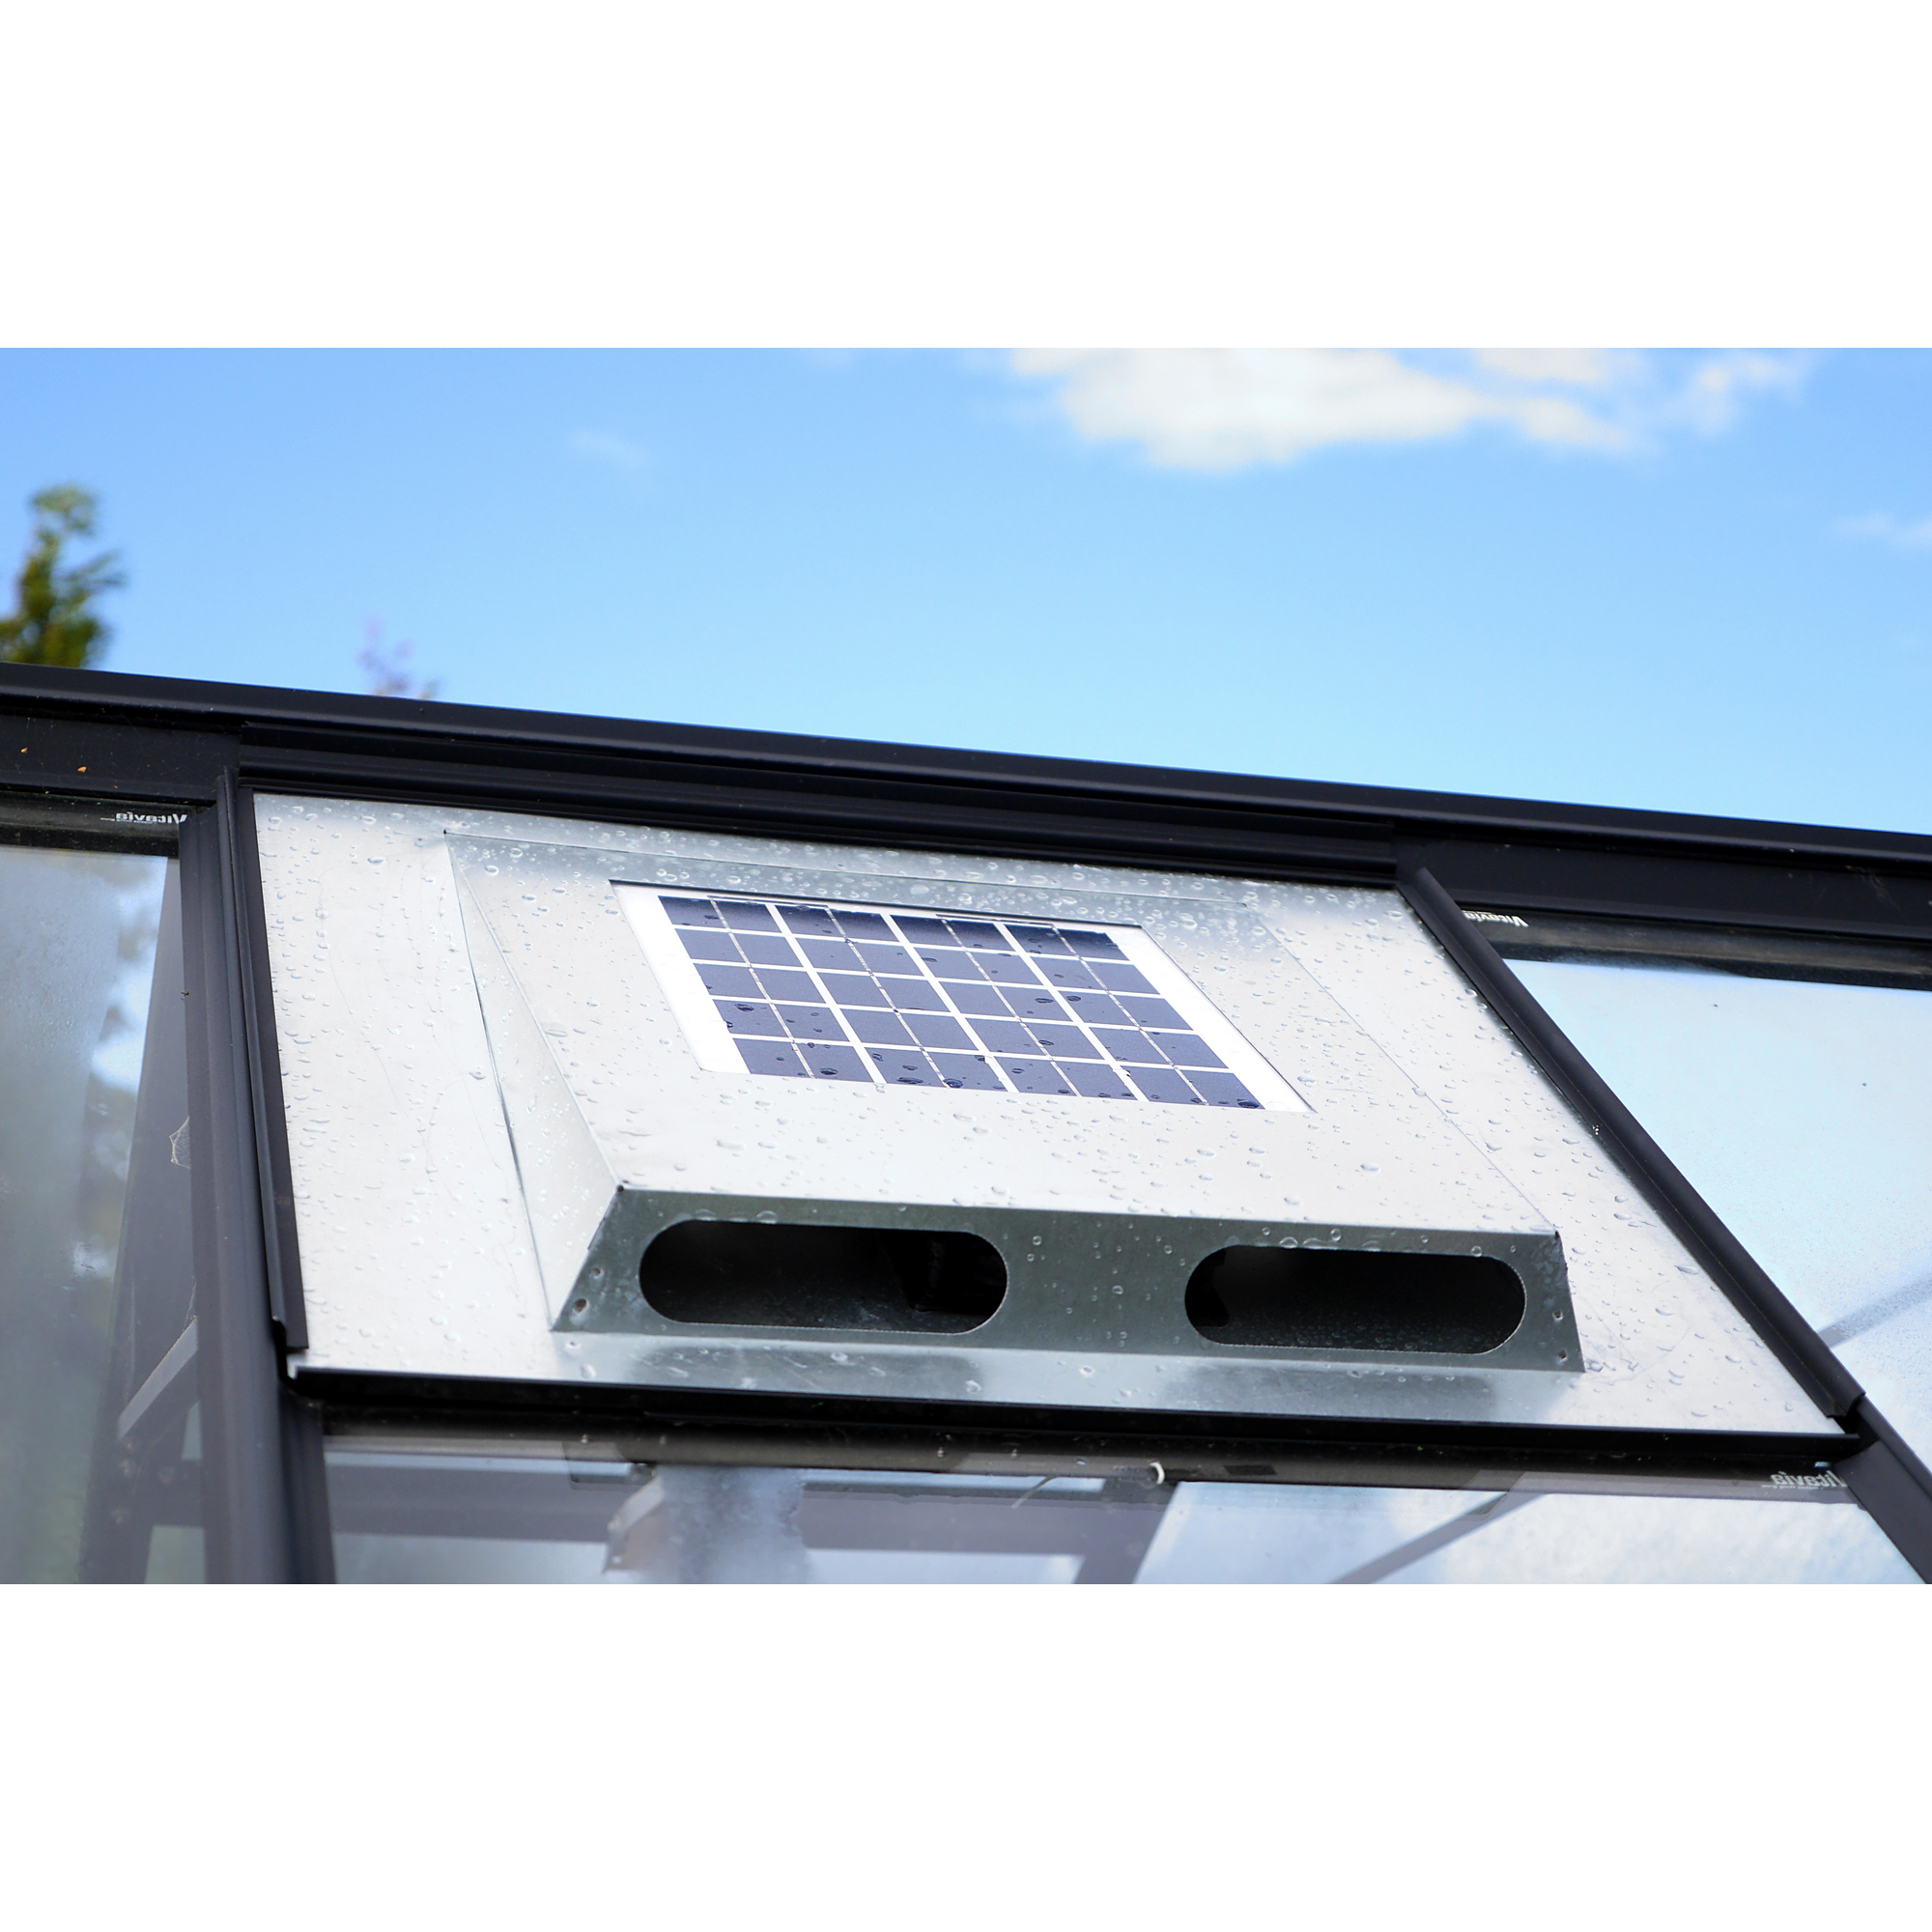 Solar-Dachventilator für Gewächshäuser 70 x 61 x 5,5 cm + product picture